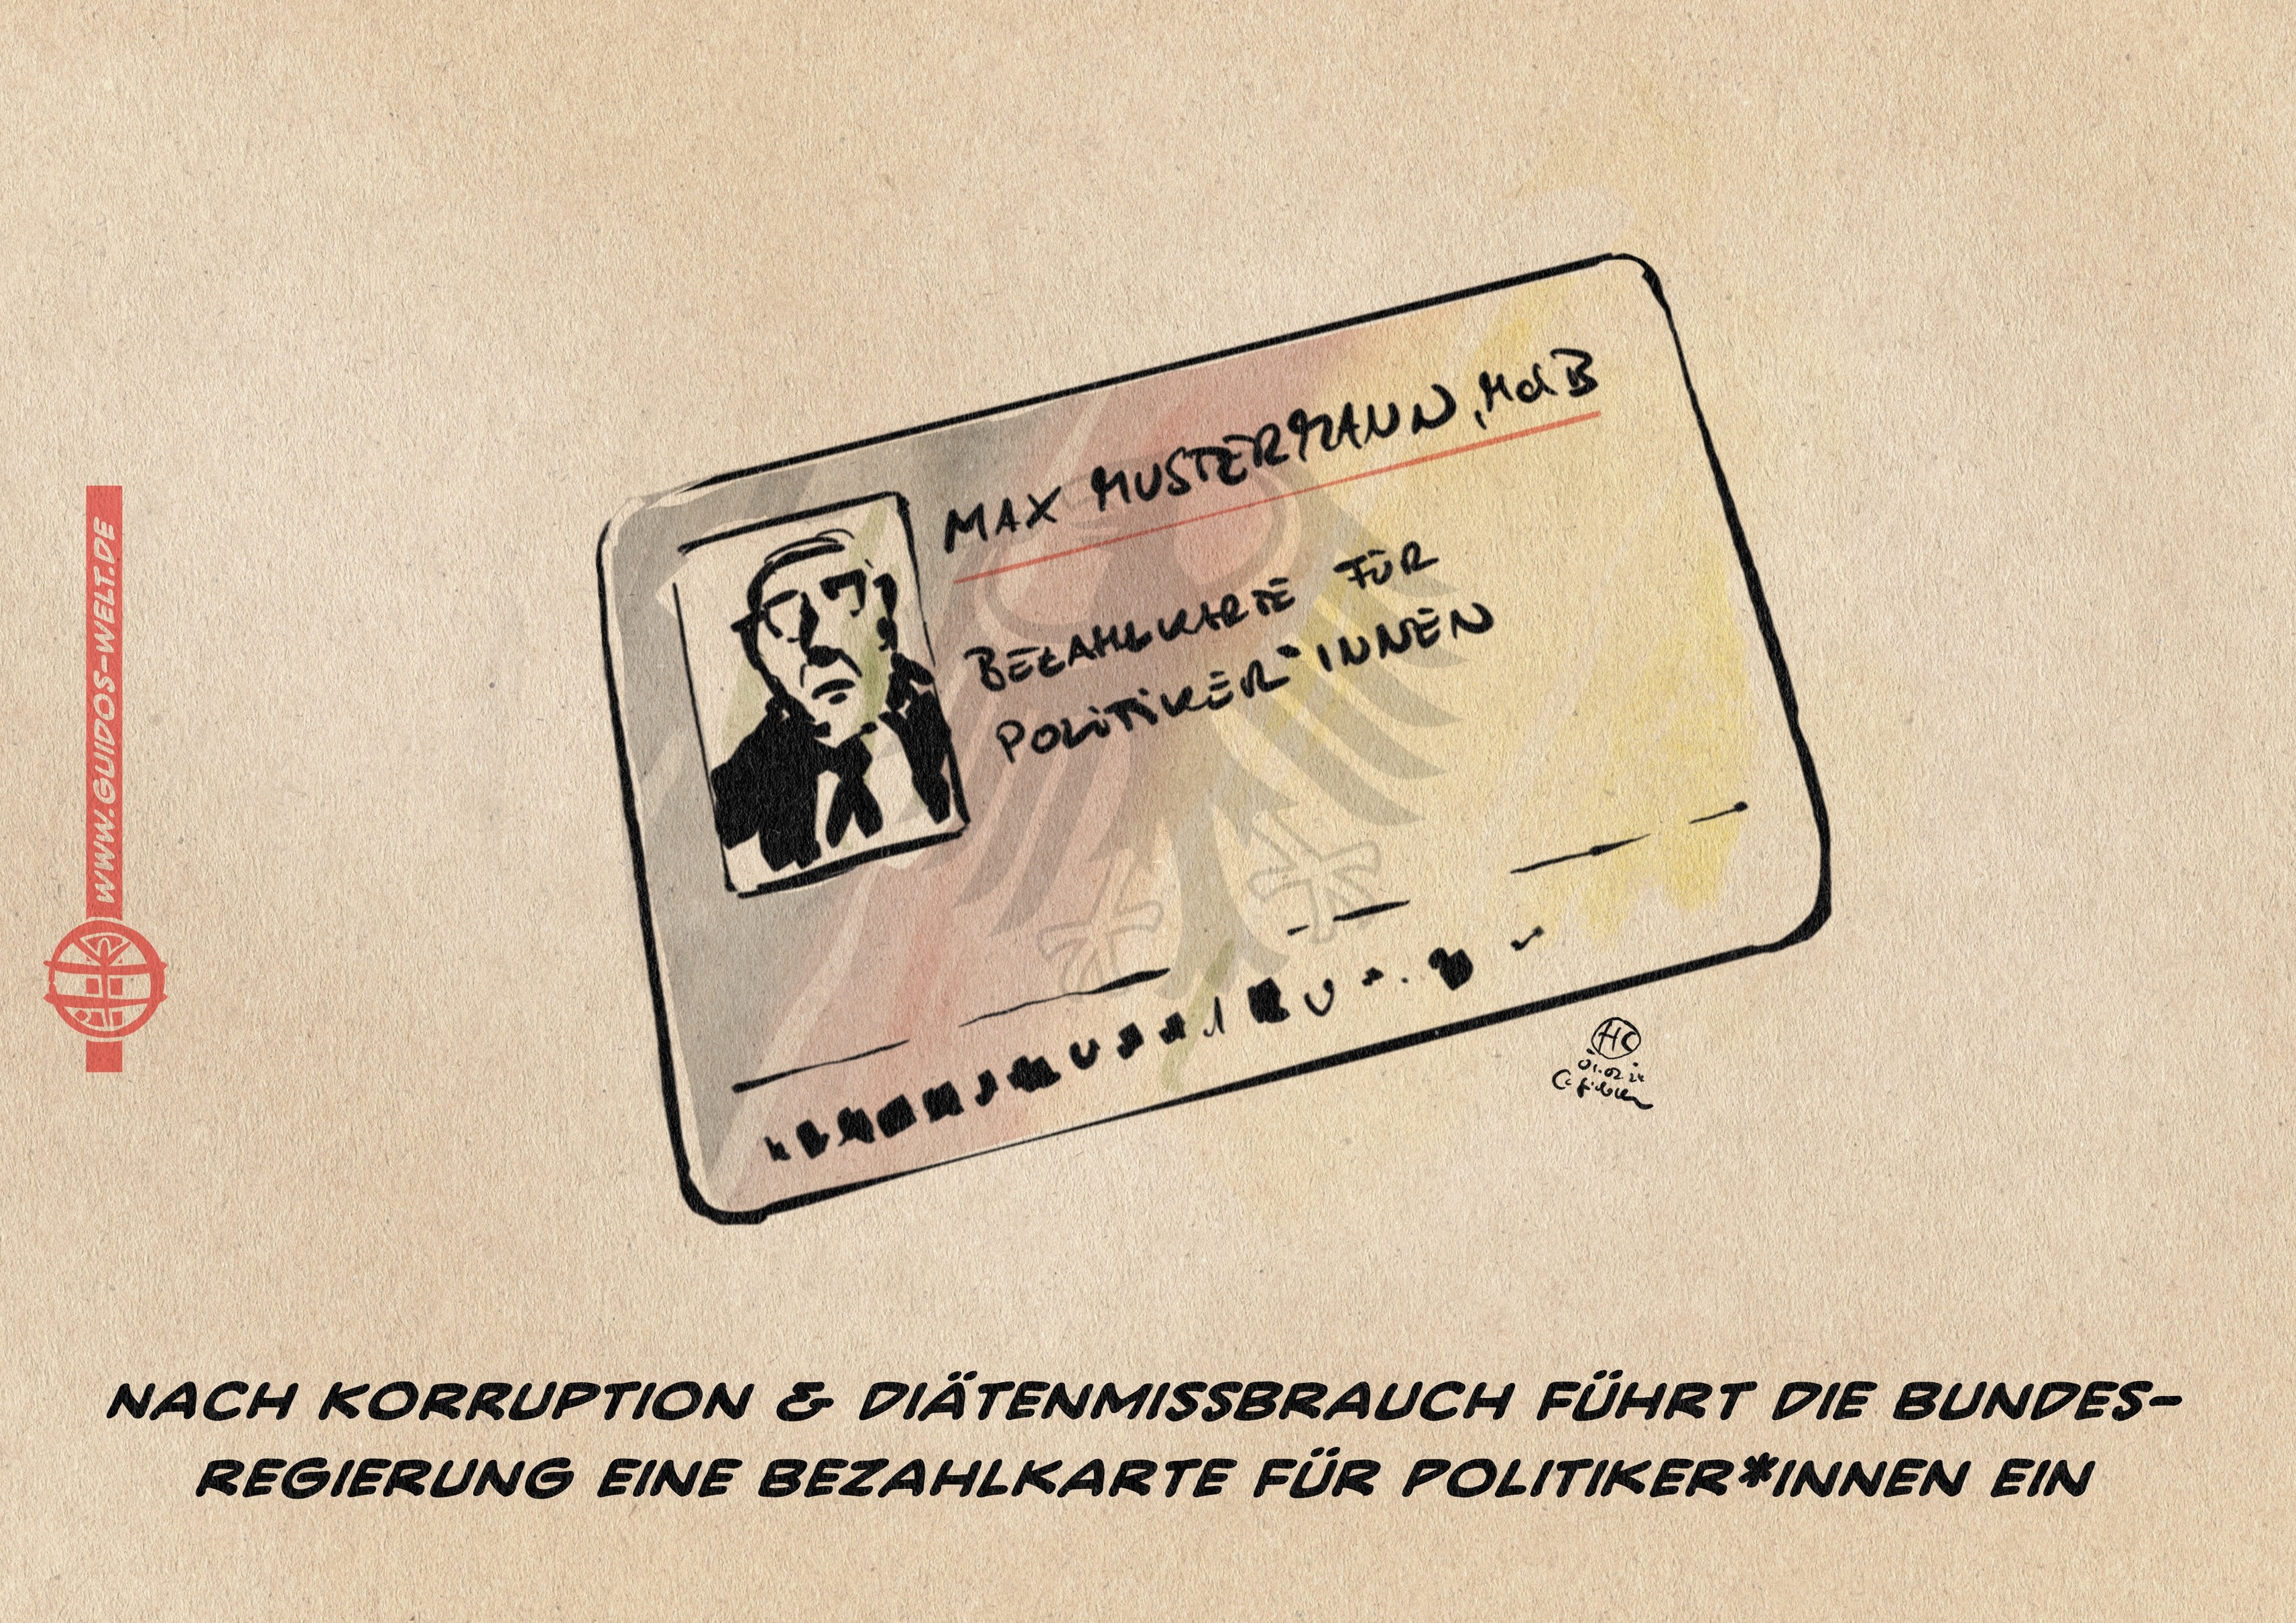 Illustration fiktive Ausweiskarte Auf der steht neben einem musterhaften Portrait Max Mustermann, MdB. Bezahlkarte für Politiker*innen. Textzeile: Nach Korruption & Diätenmißbrauch führt die Bundesregierung eine Bezahlkarte für Politiker*innen ein